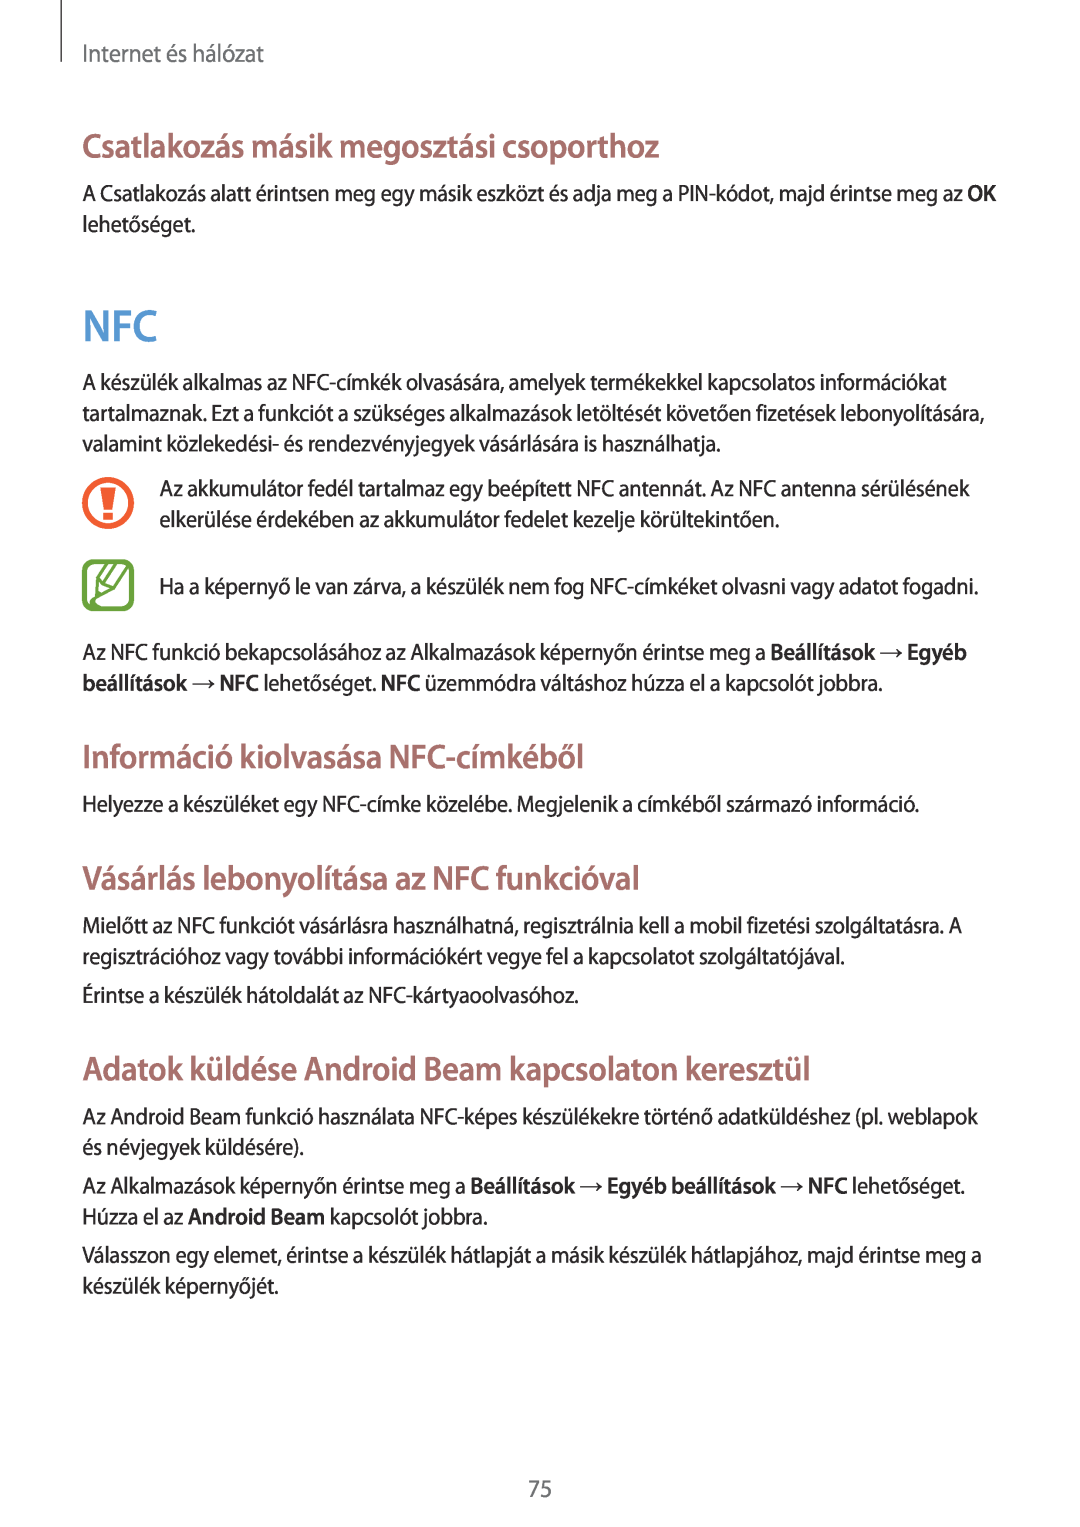 Samsung GT-N7100TADVDH Csatlakozás másik megosztási csoporthoz, Információ kiolvasása NFC-címkéből, Internet és hálózat 